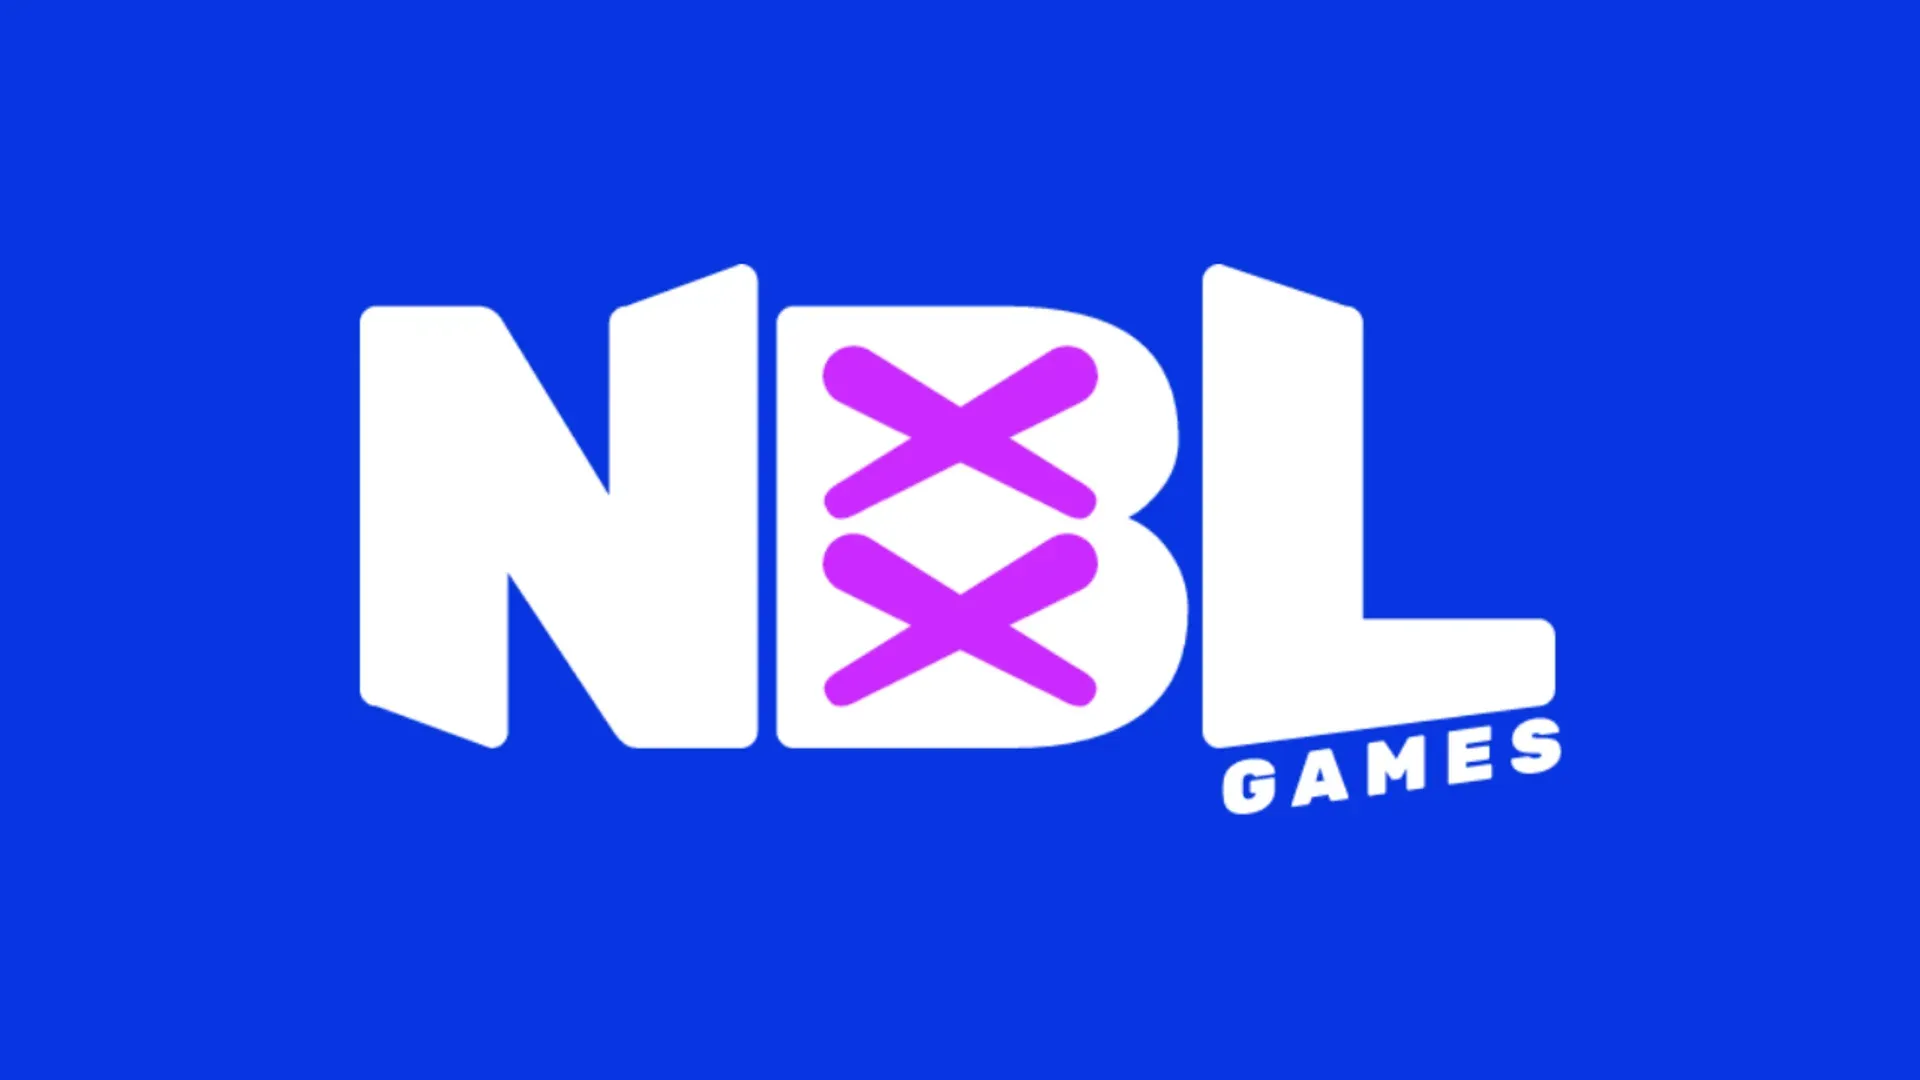 150 milyon TL değerleme üzerinden yatırım alan NBL Games, ilk oyunu ile ABD pazarına açılmaya hazırlanıyor